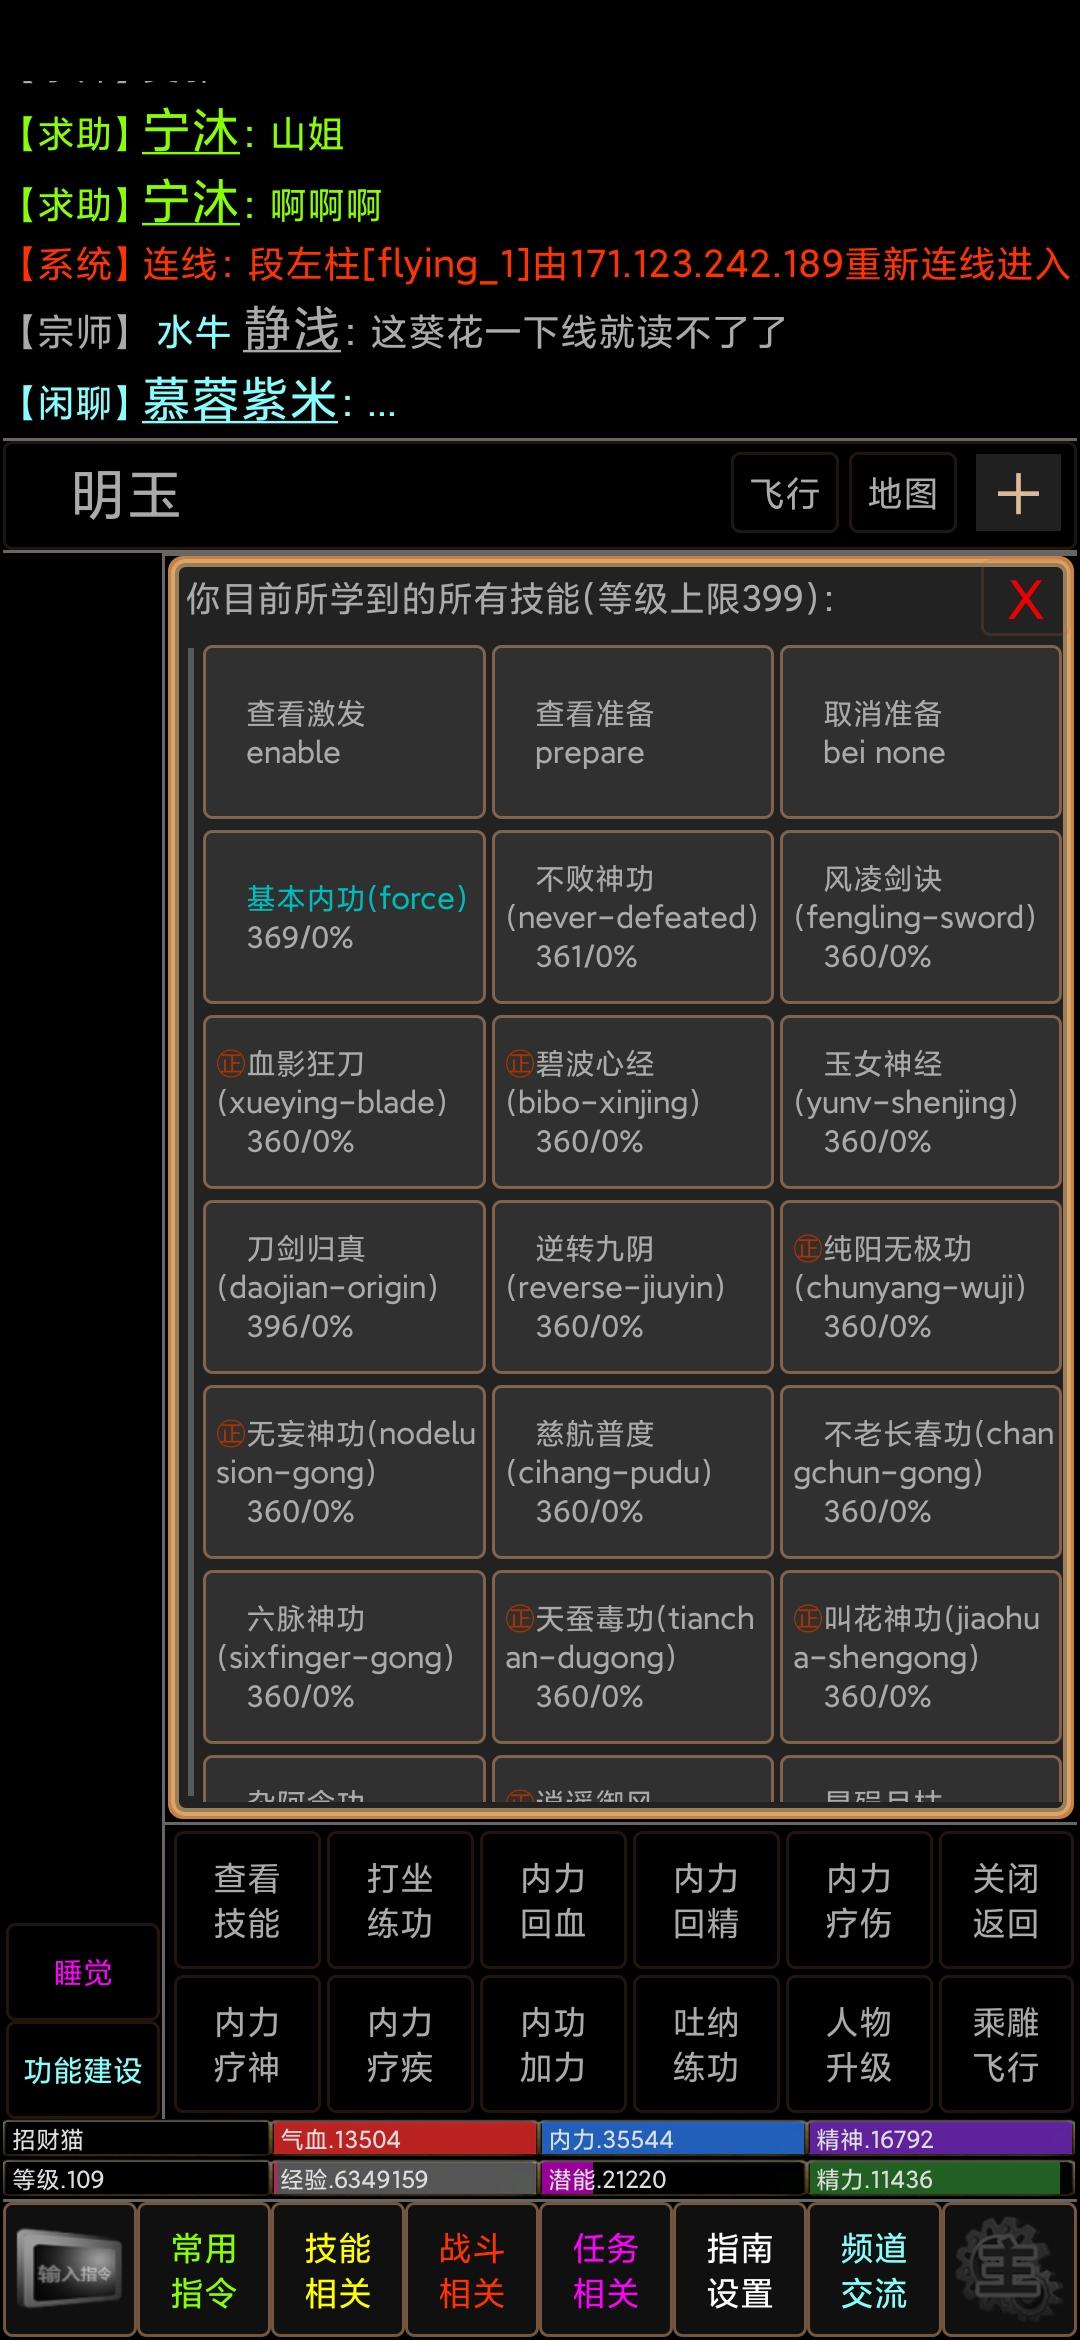 Screenshot 1 of Jianghu သူရဲကောင်းများ၏ဒဏ္ဍာရီ 